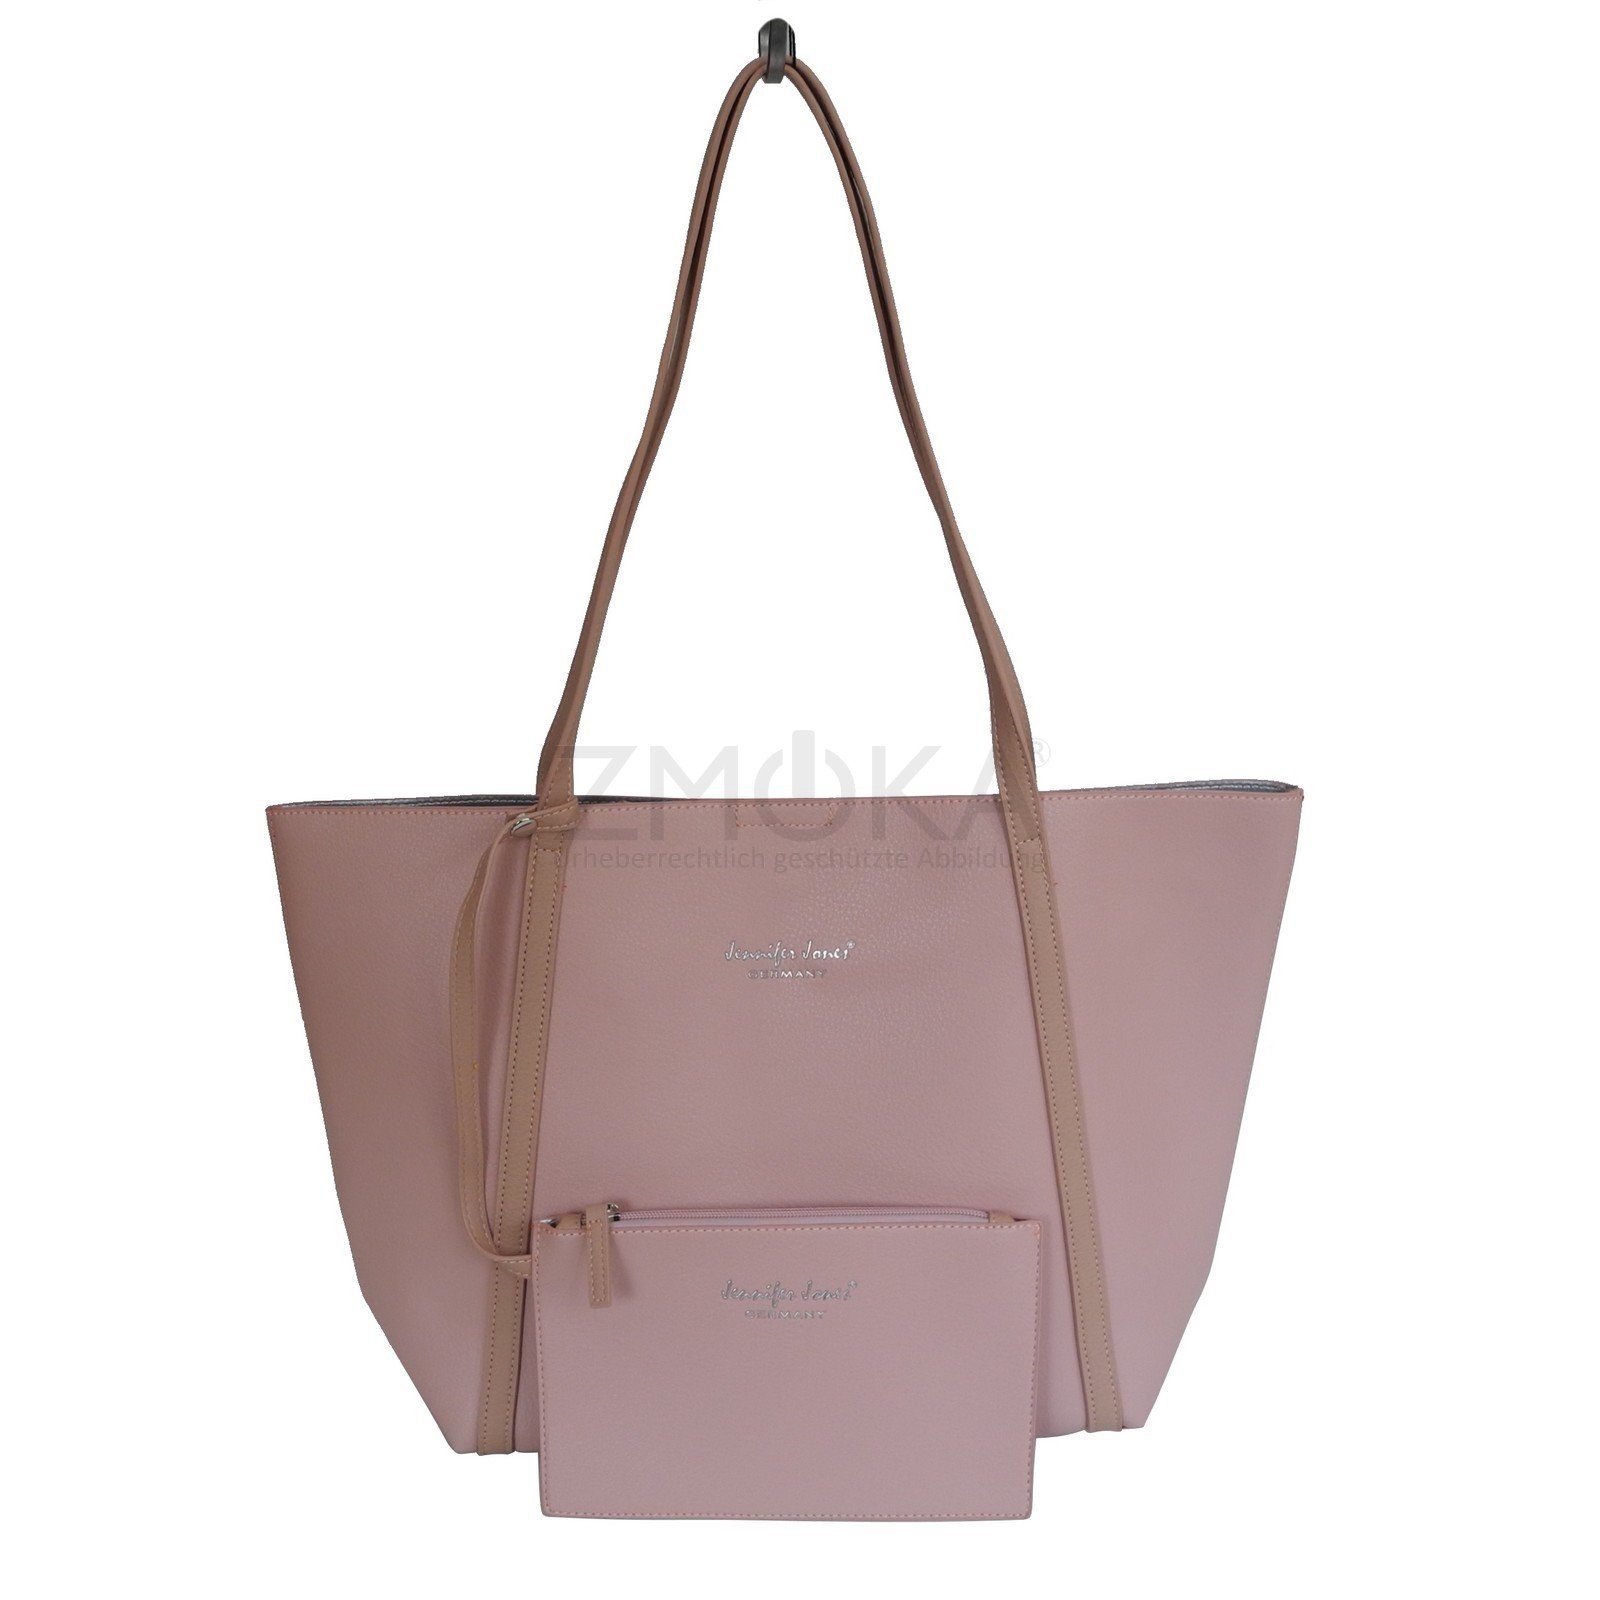 Jennifer Jones Handtasche Jennifer Jones - große Damen Schultertasche Handtasche Shopper Auswah Rose | Handtaschen